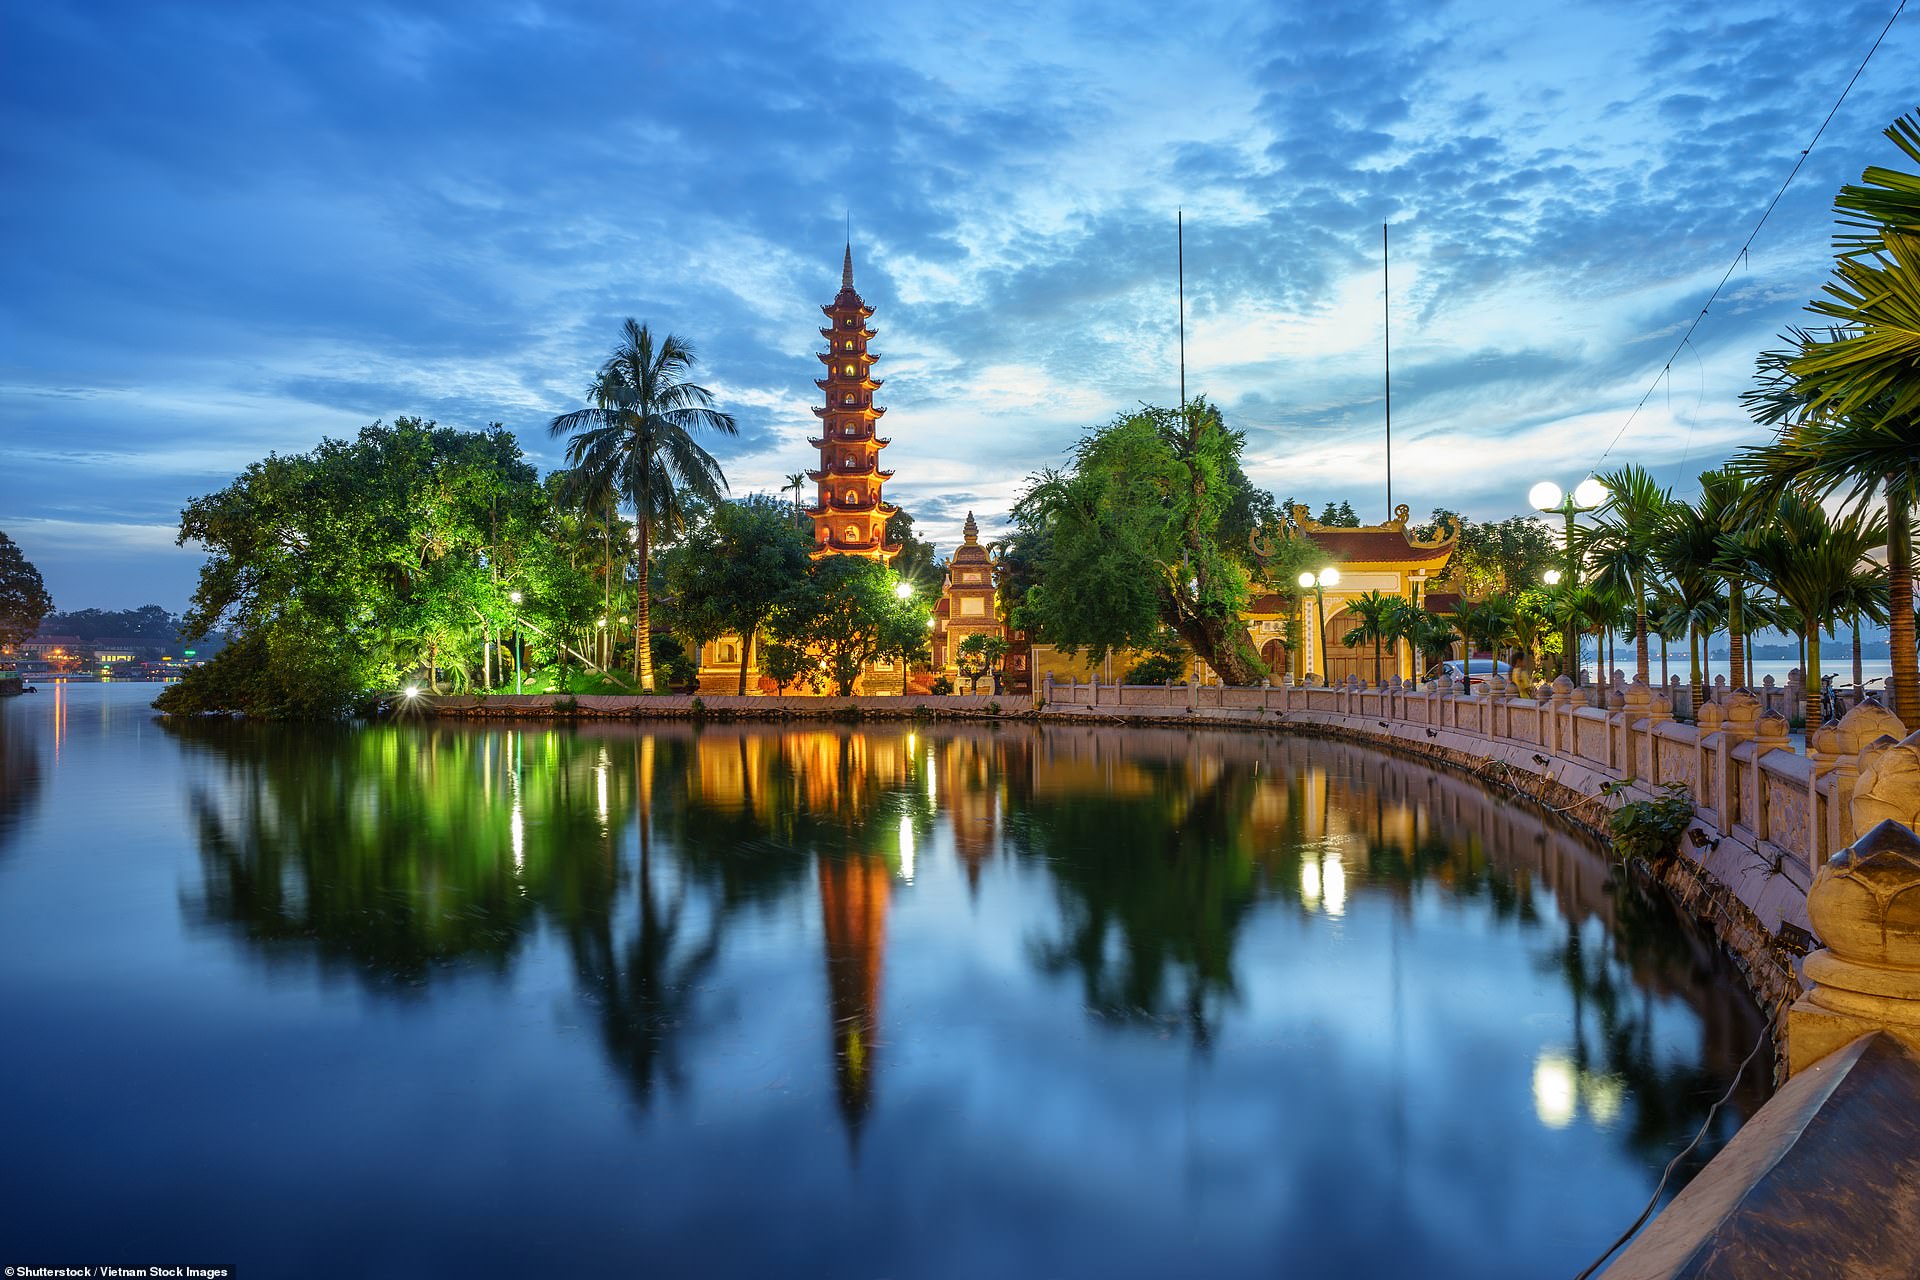 Hình ảnh quê hương đất nước Việt Nam đẹp nhất 